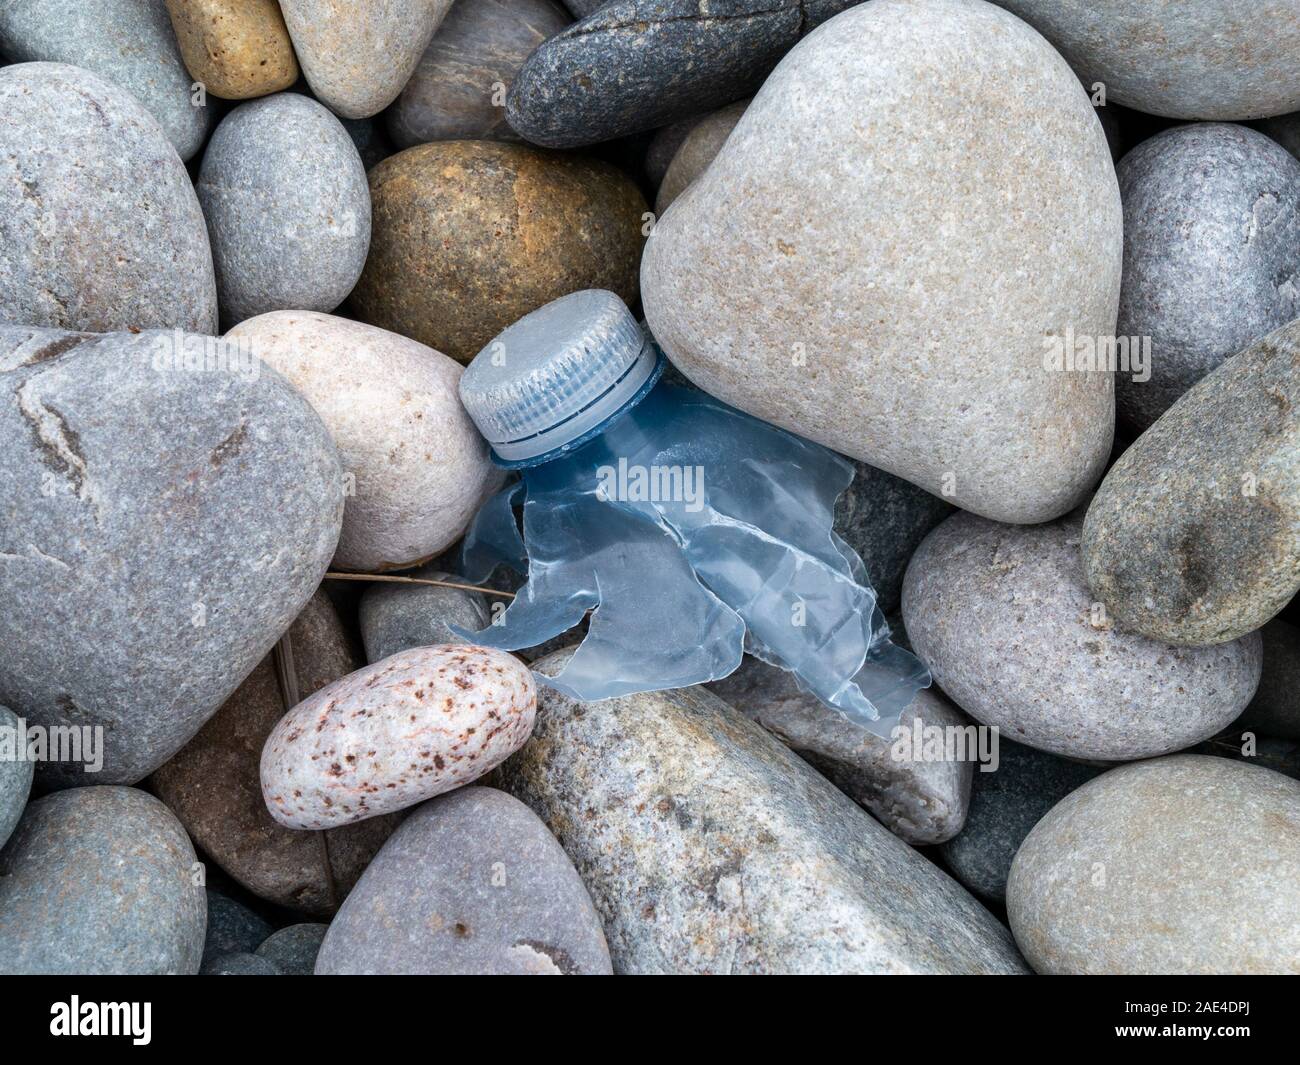 Reste de bouteille en plastique cassé entre les cailloux sur la plage, Uragaig écossais, à l'île de Colonsay, Ecosse, Royaume-Uni Banque D'Images